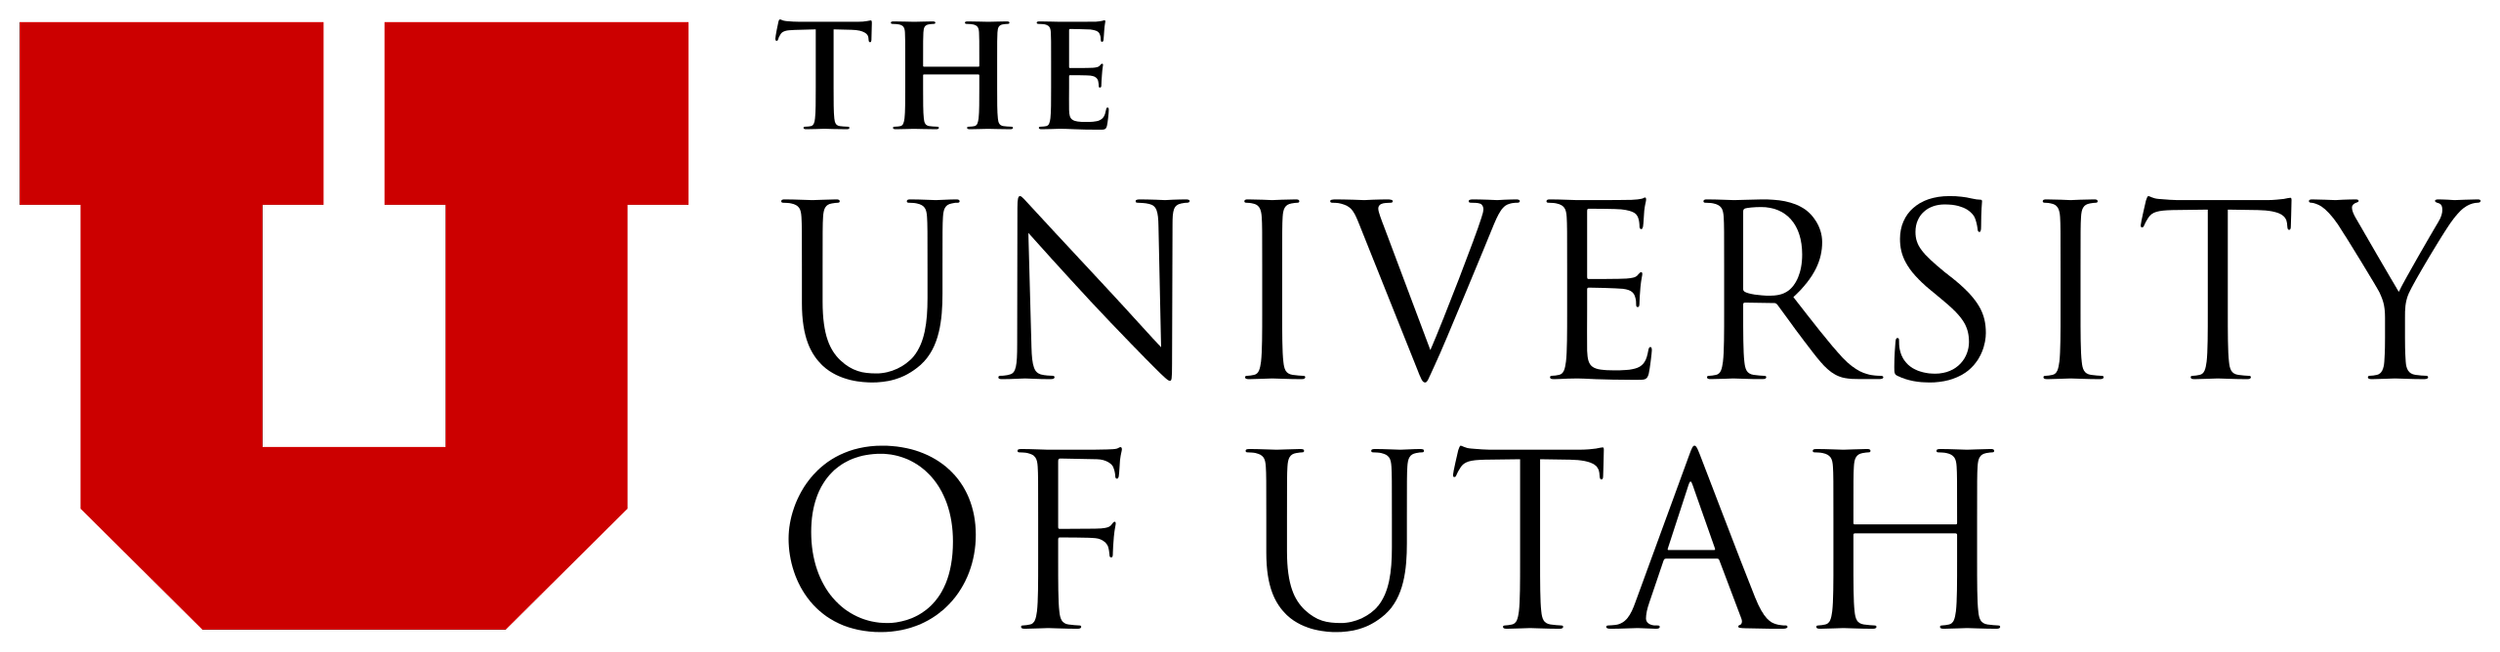 2560px-University_of_Utah_horizontal_logo.svg.png